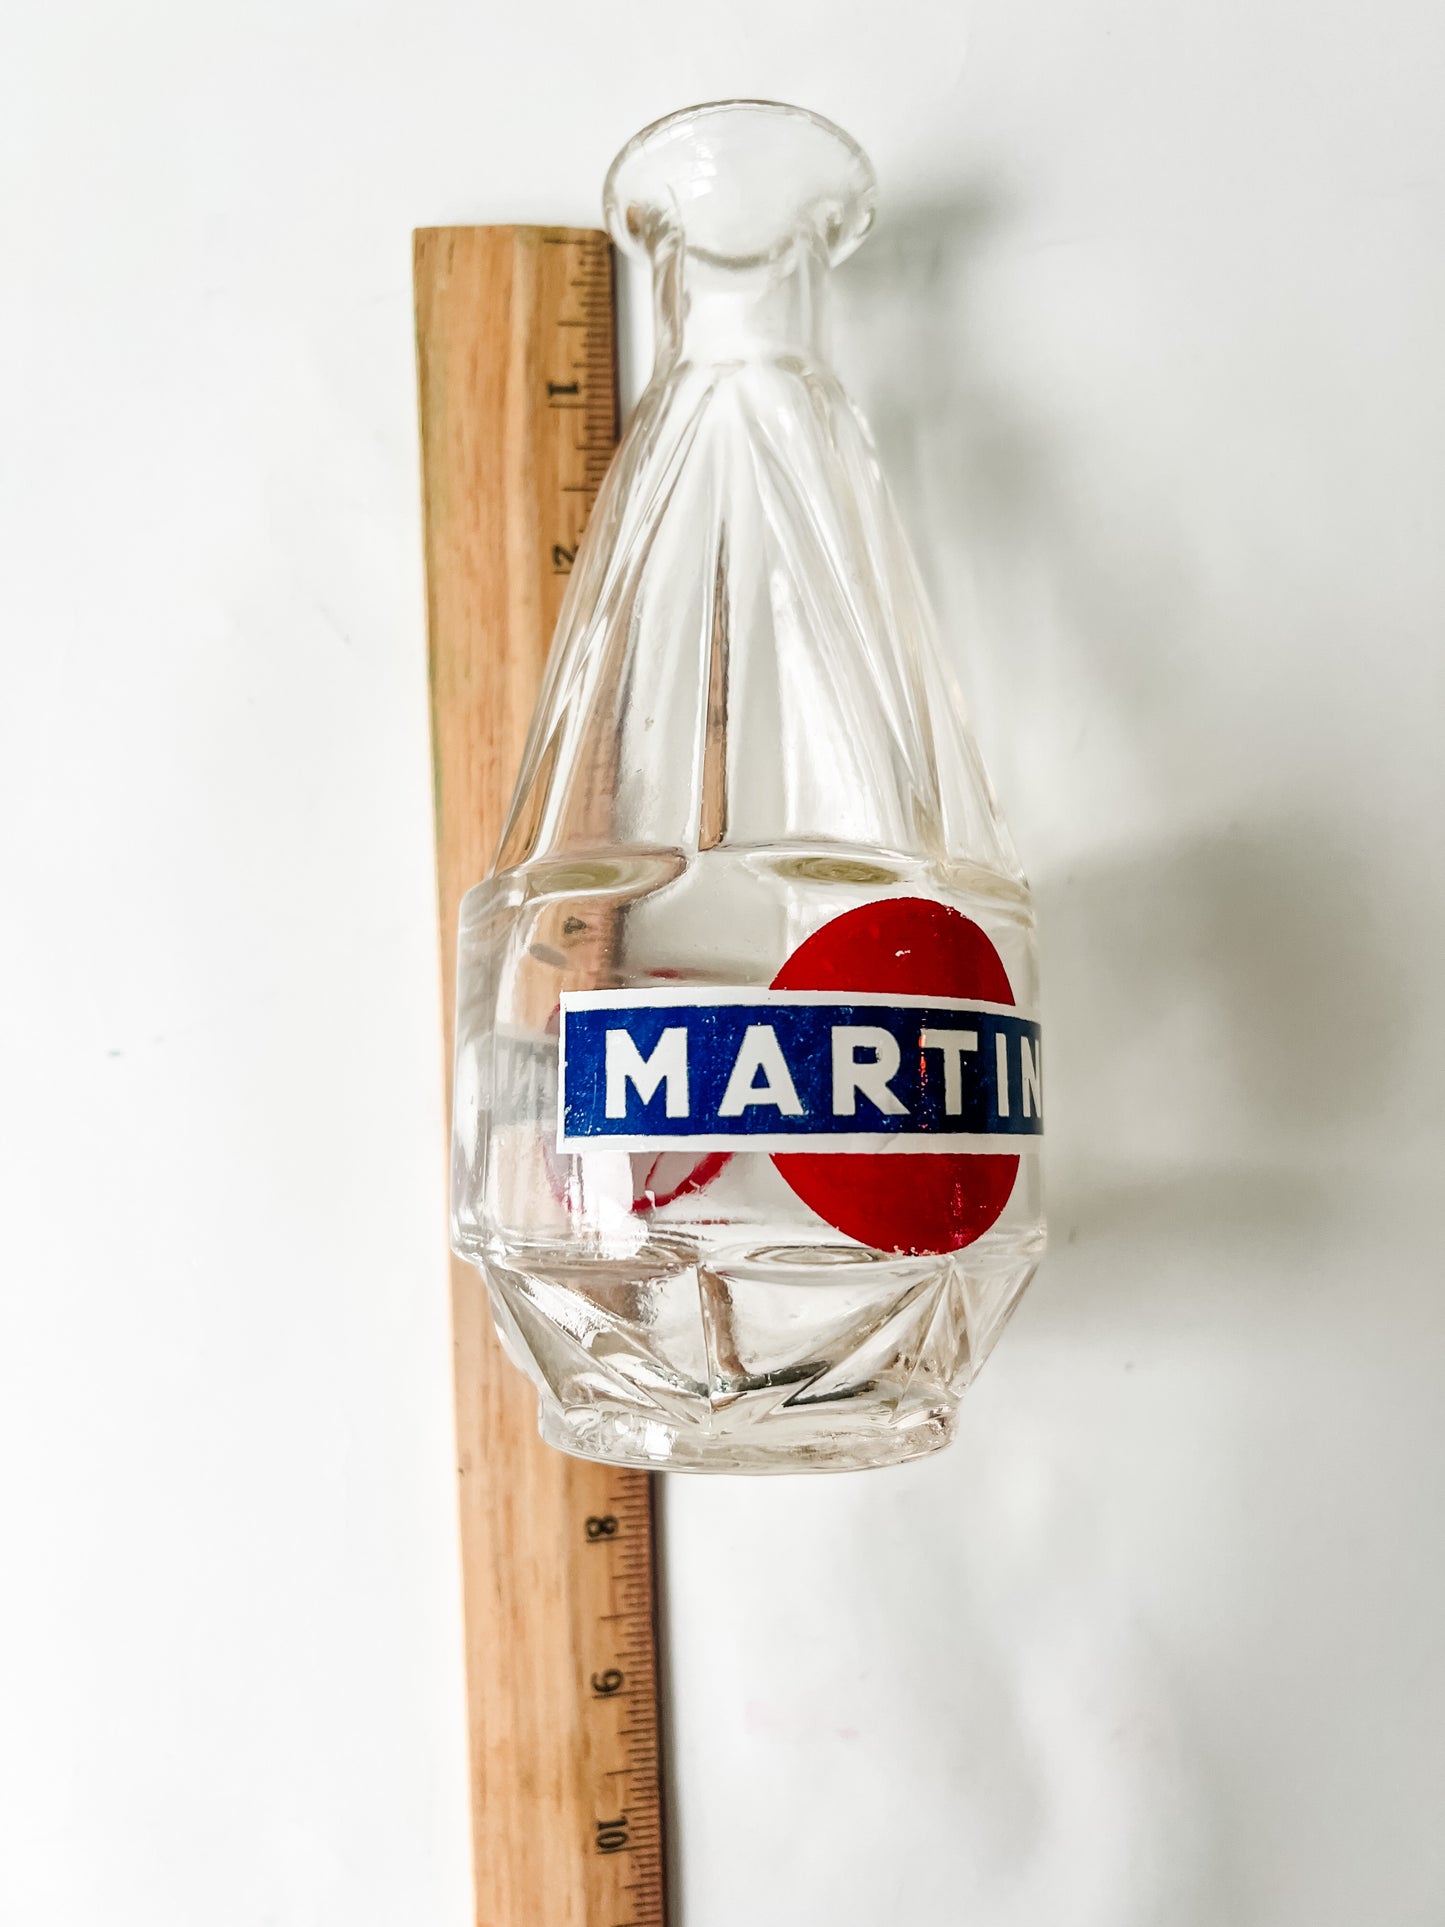 Rare Vintage Martini Vermouth Carafe/Decanter